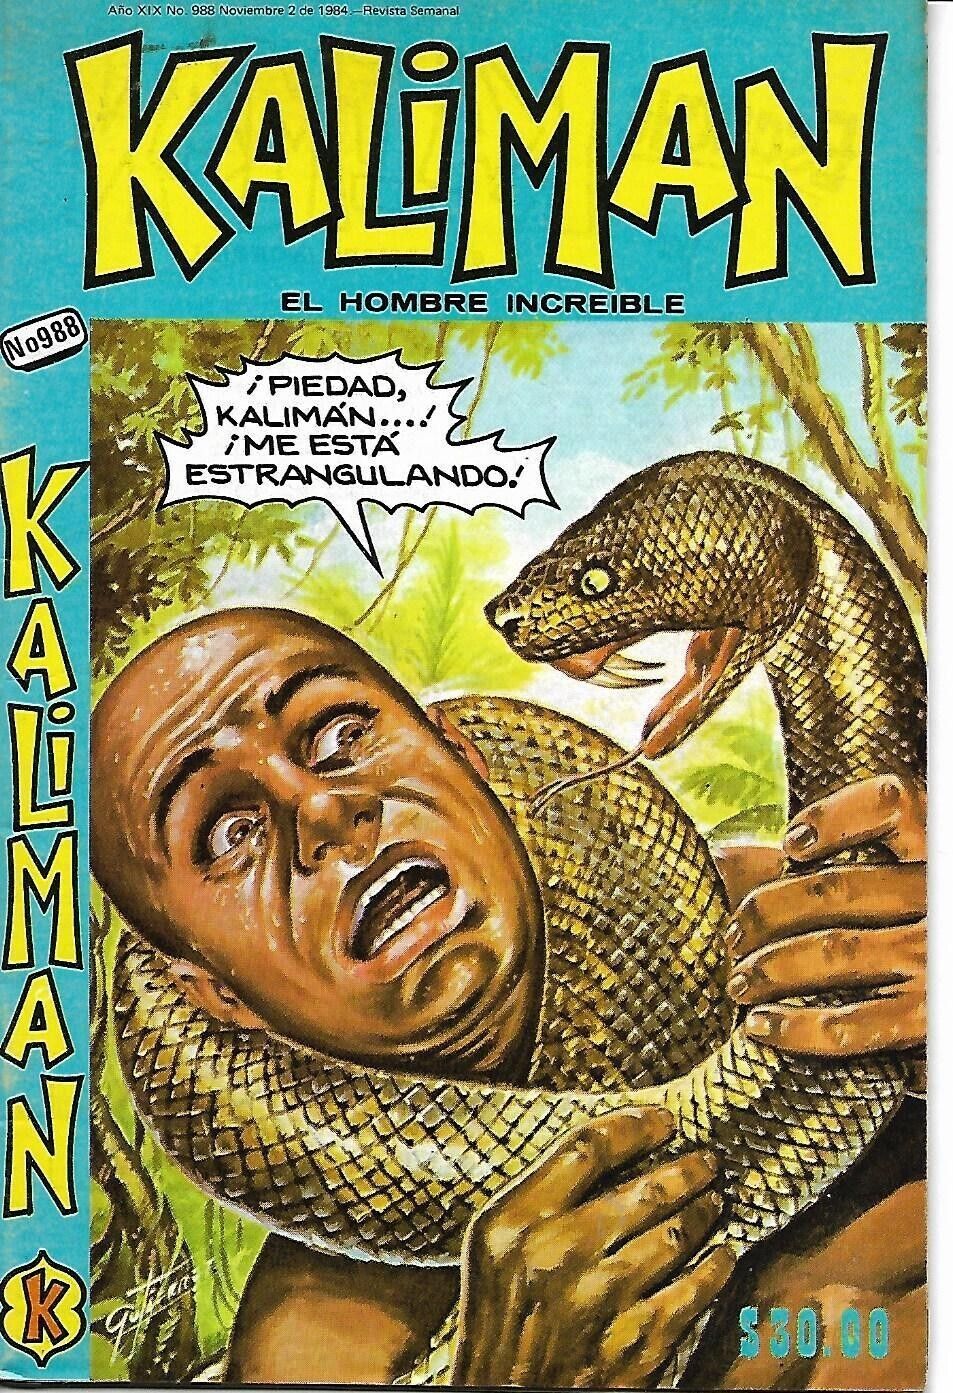 Kaliman El Hombre Increible #988 - Noviembre 2, 1984 - Mexico